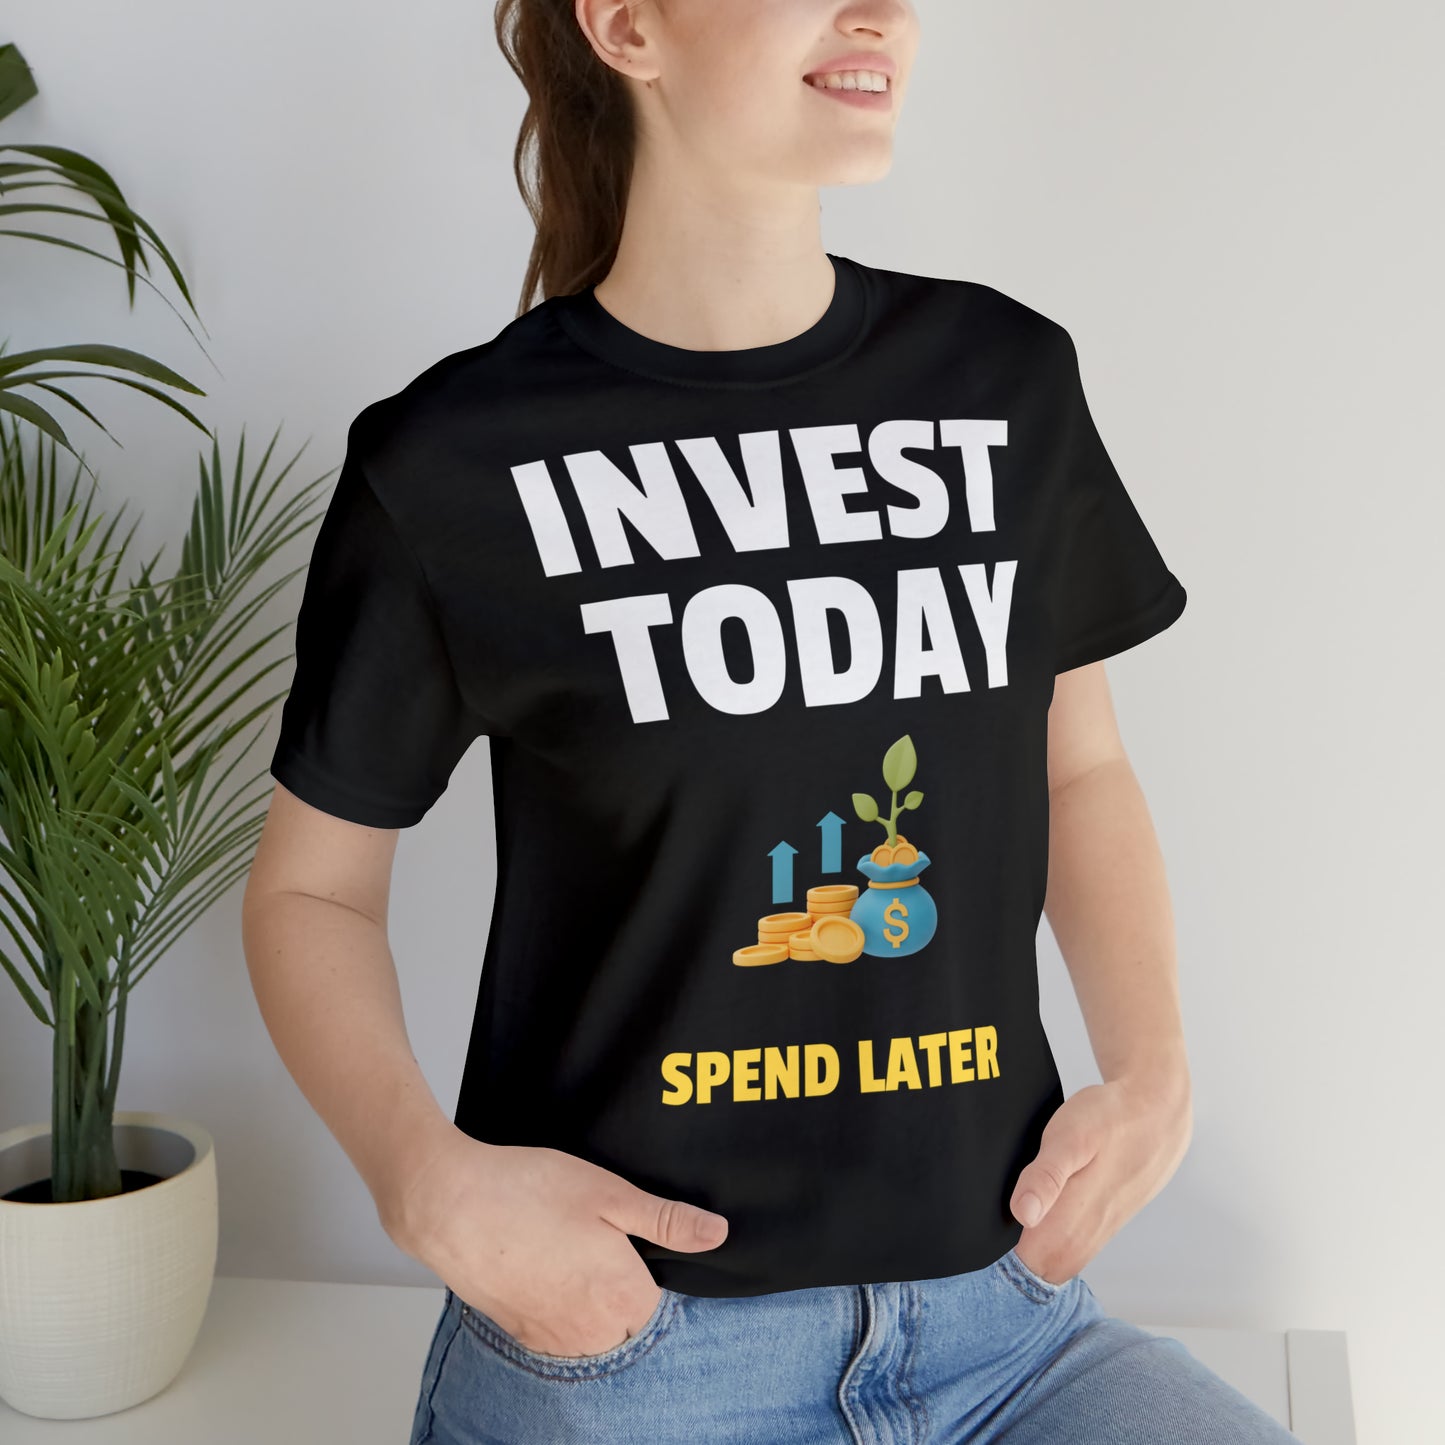 Invest today t-paita